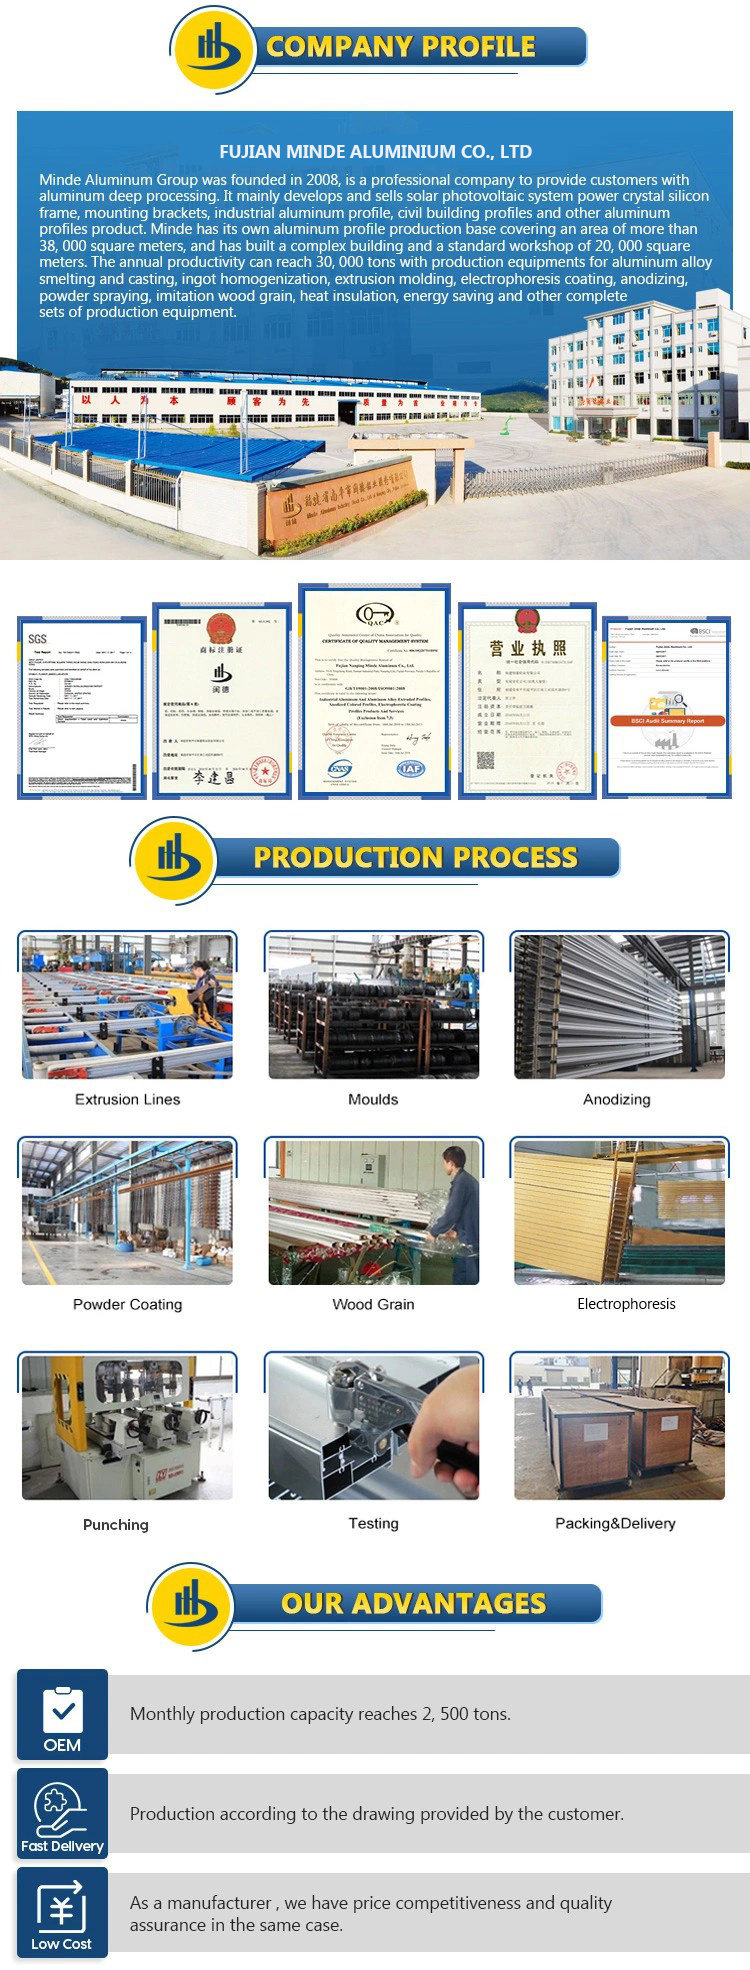 Chinese Manufacture Aluminum Profiles for Window Aluminum Extrusion Profile